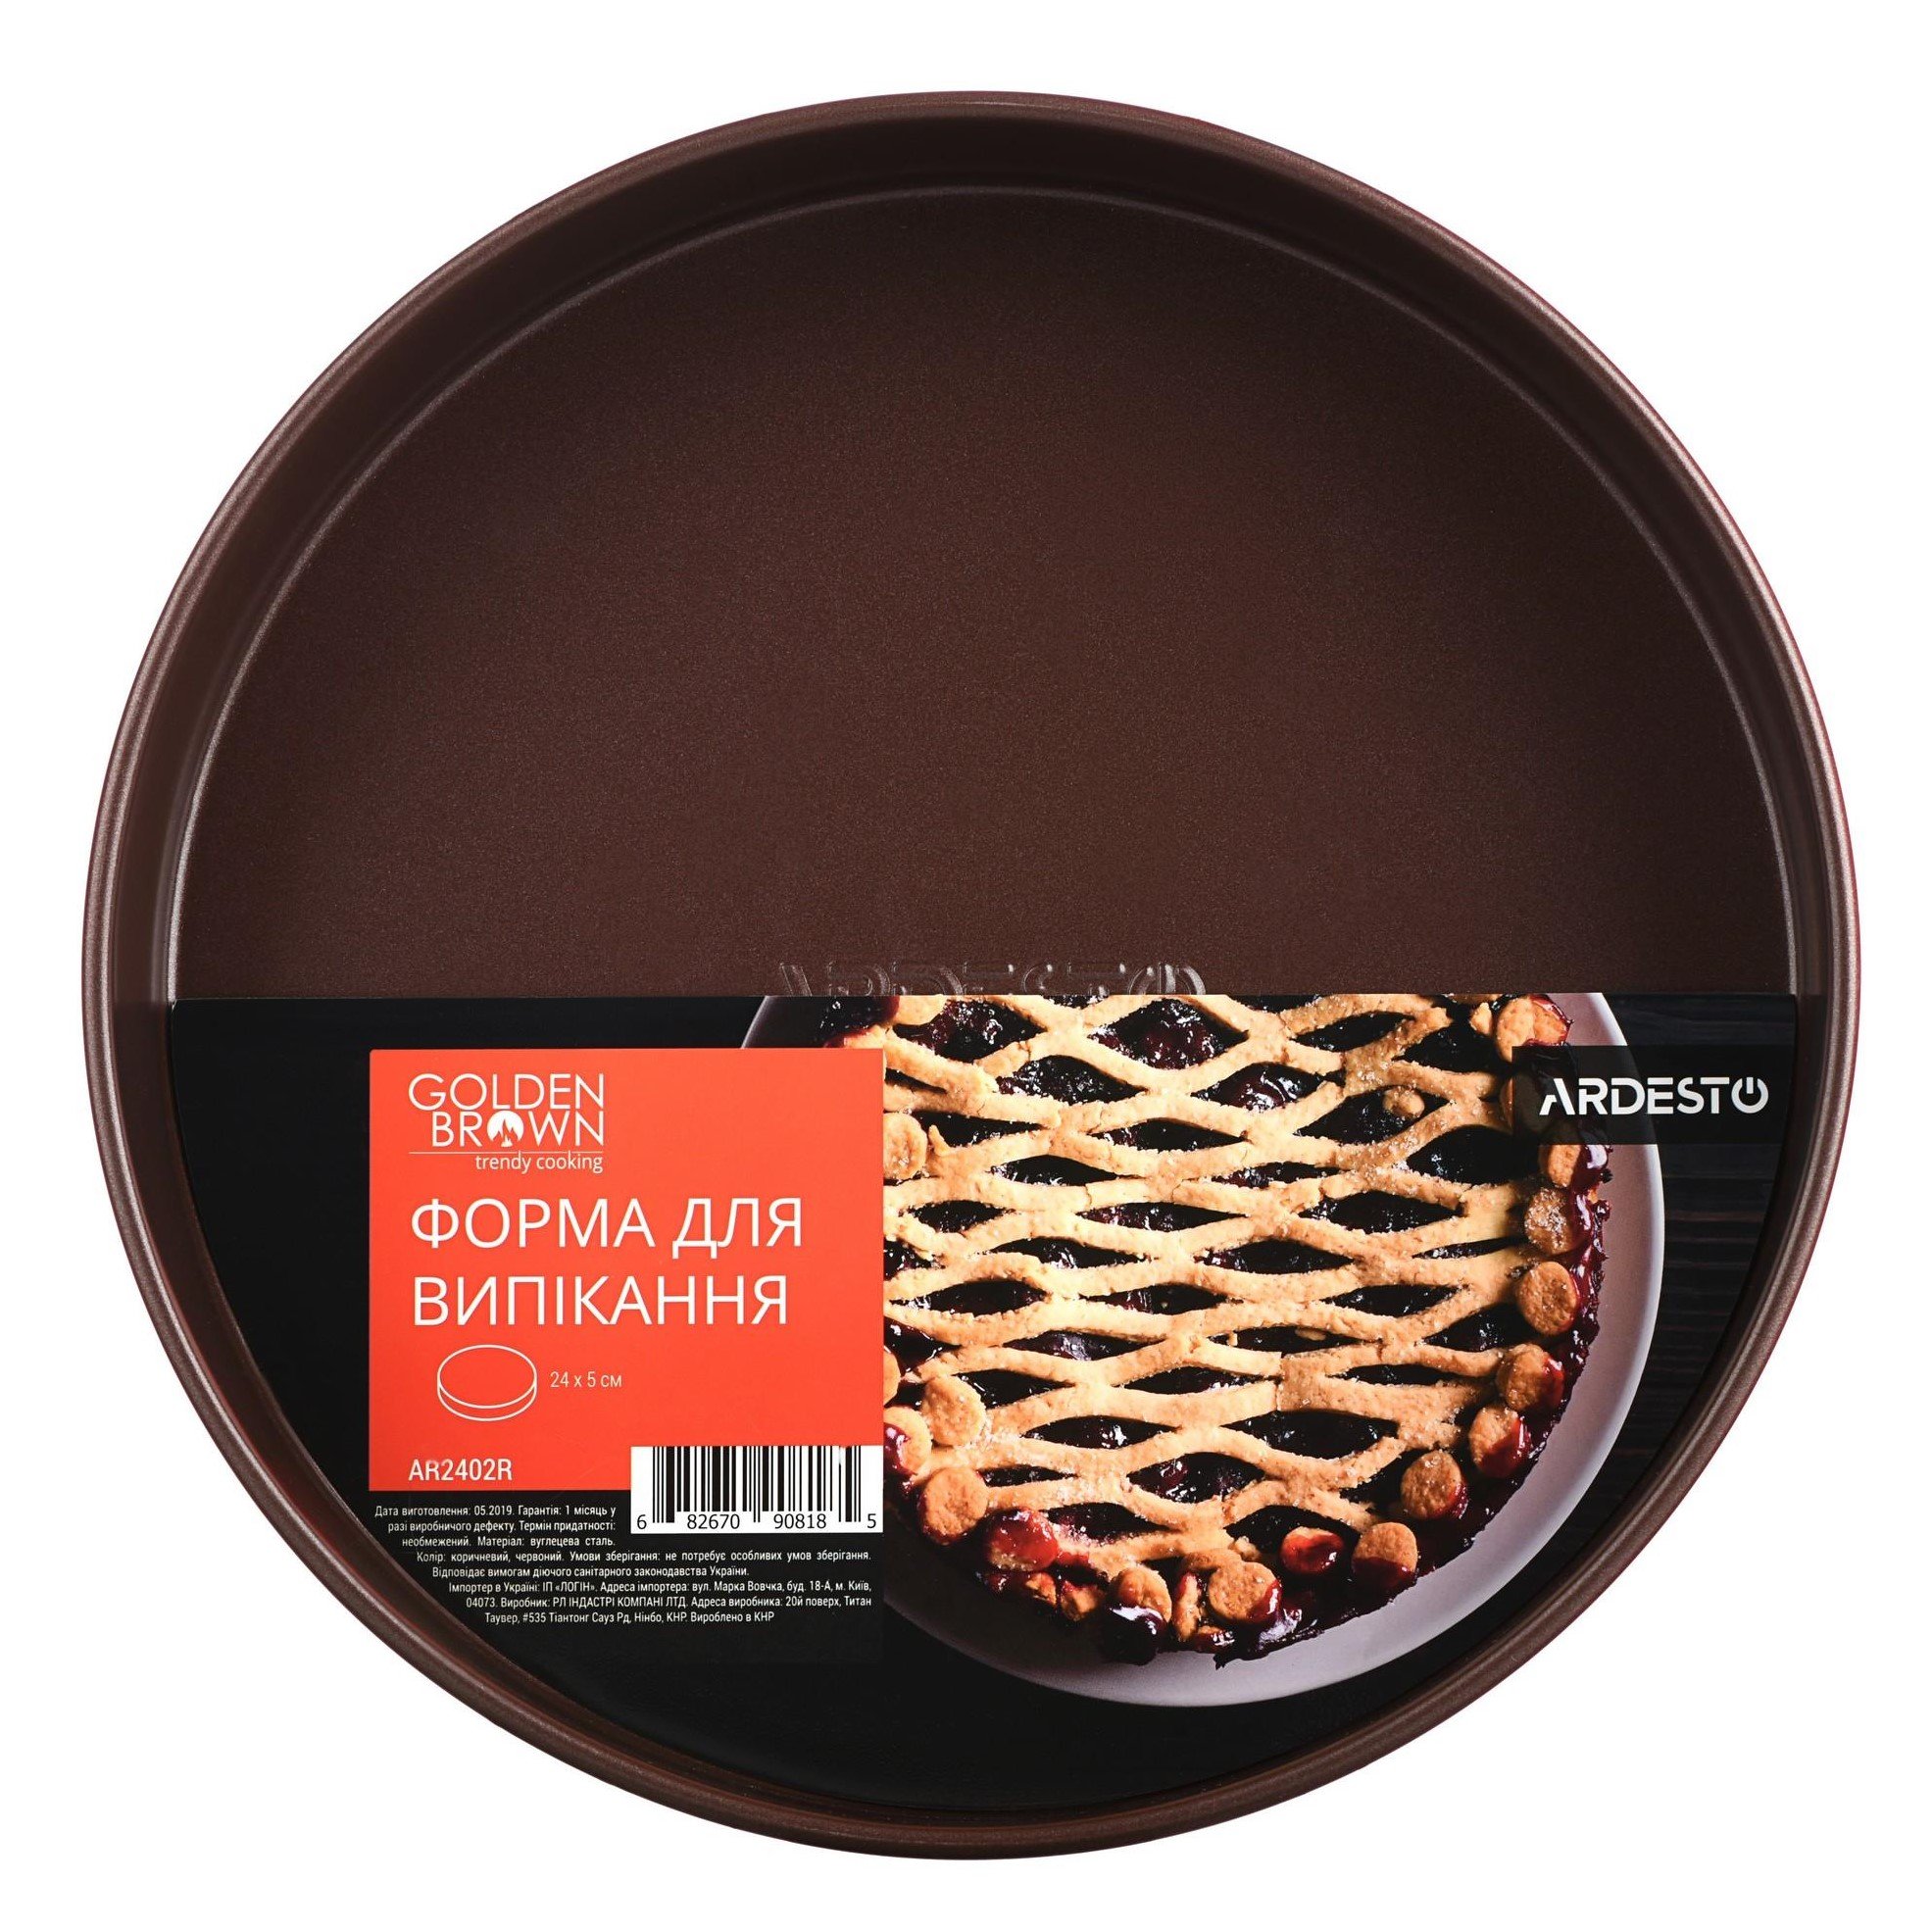 Форма для випікання Ardesto Golden Brown, кругла, 24 см, коричневий (AR2402R) - фото 1